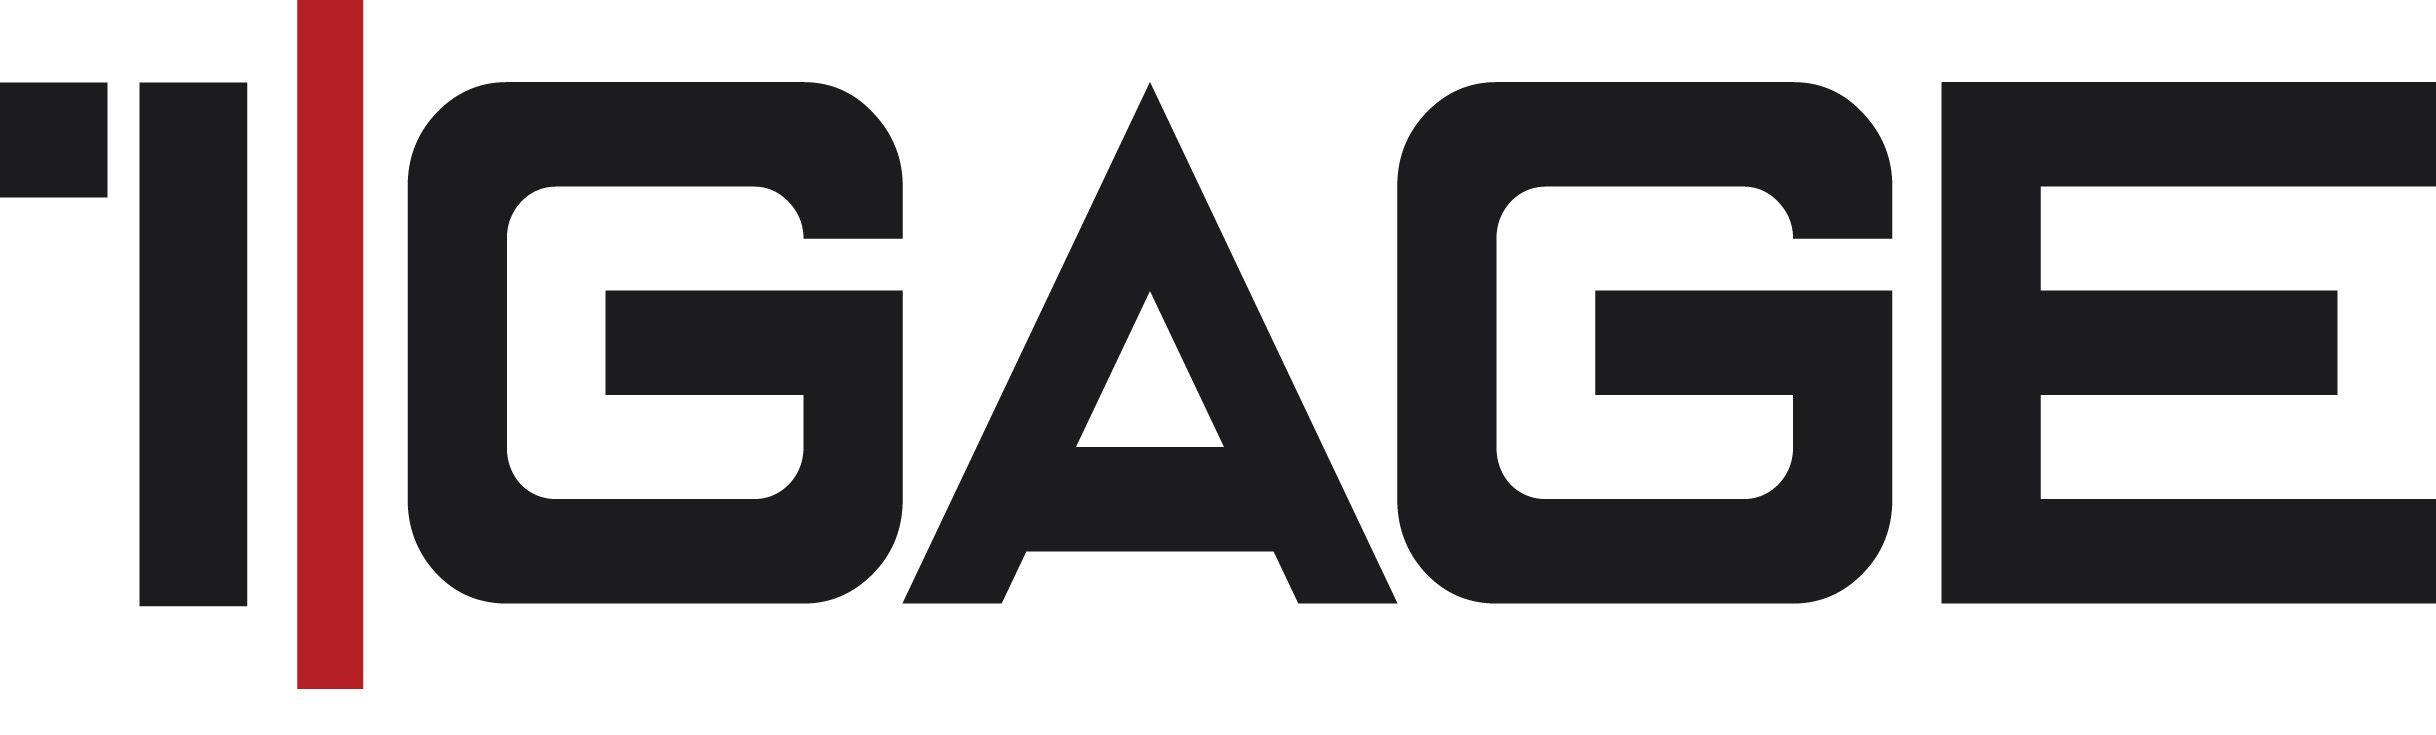 Gage Logo - 1. Gage